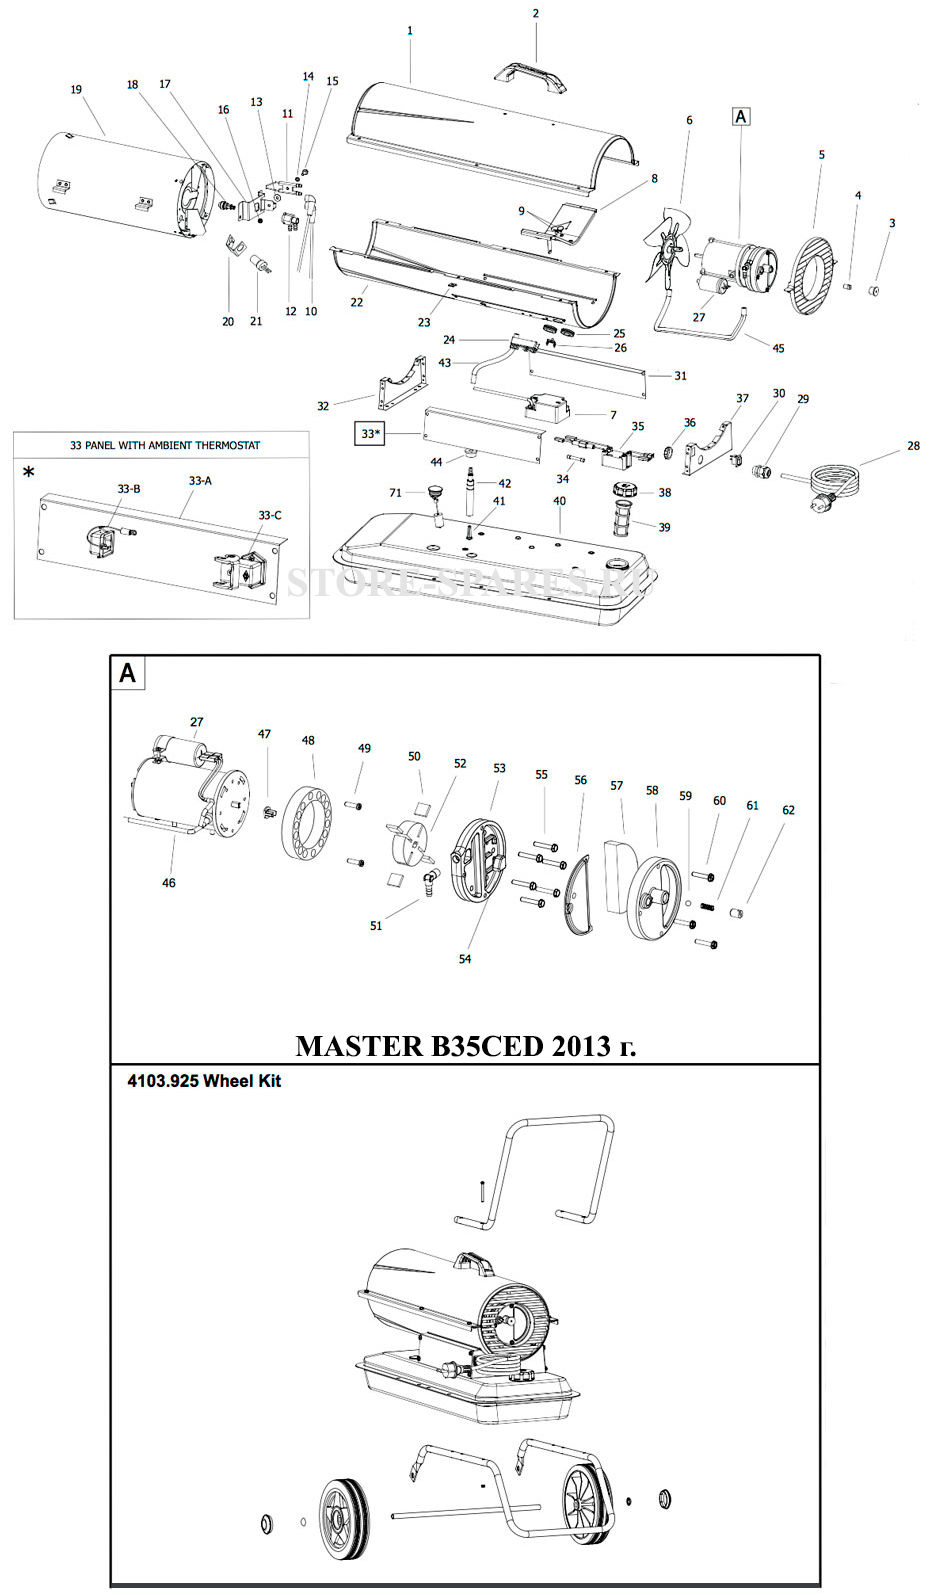 Нажмите чтобы посмотреть схему тепловой пушки MASTER B35CED 2013 г.в.